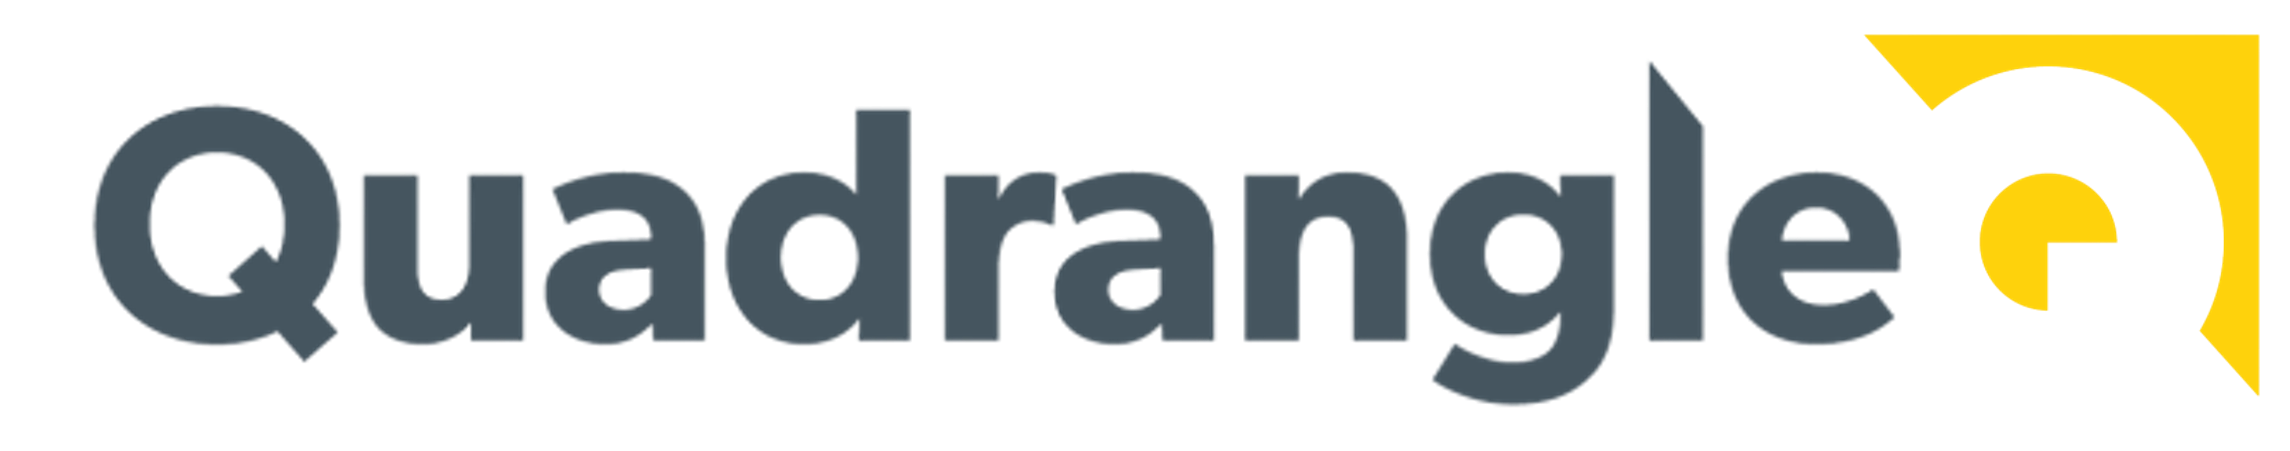 Logo for Quadrangle Consulting